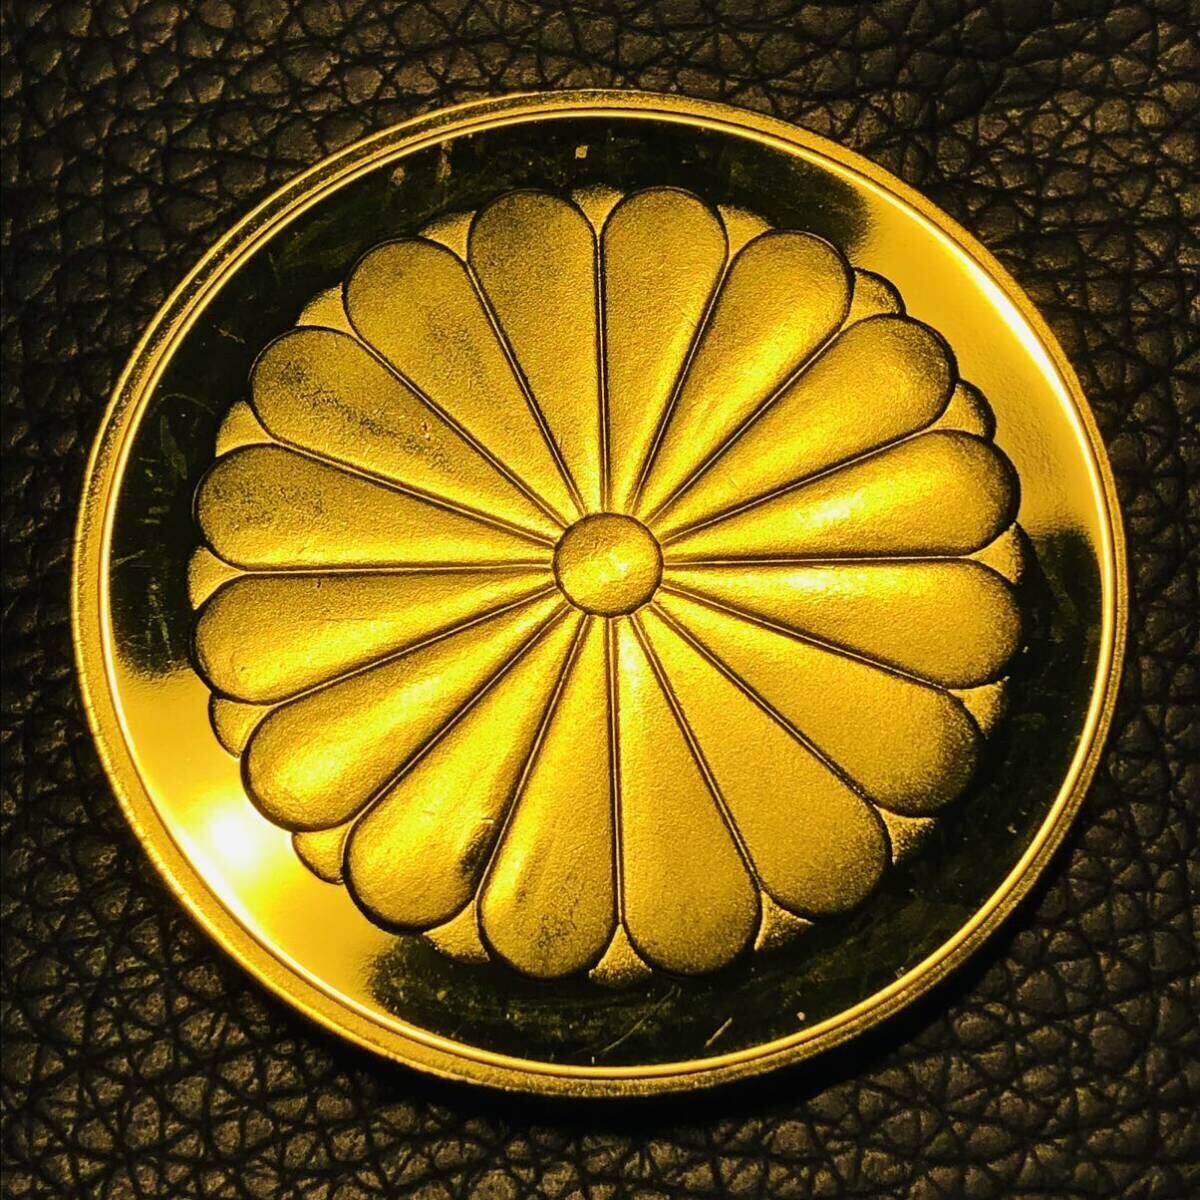 日本古銭 鳳凰 菊の御紋 天皇陛下御即位記念 記念メダル 10万円金貨 大型金貨 カプセル付きの画像2